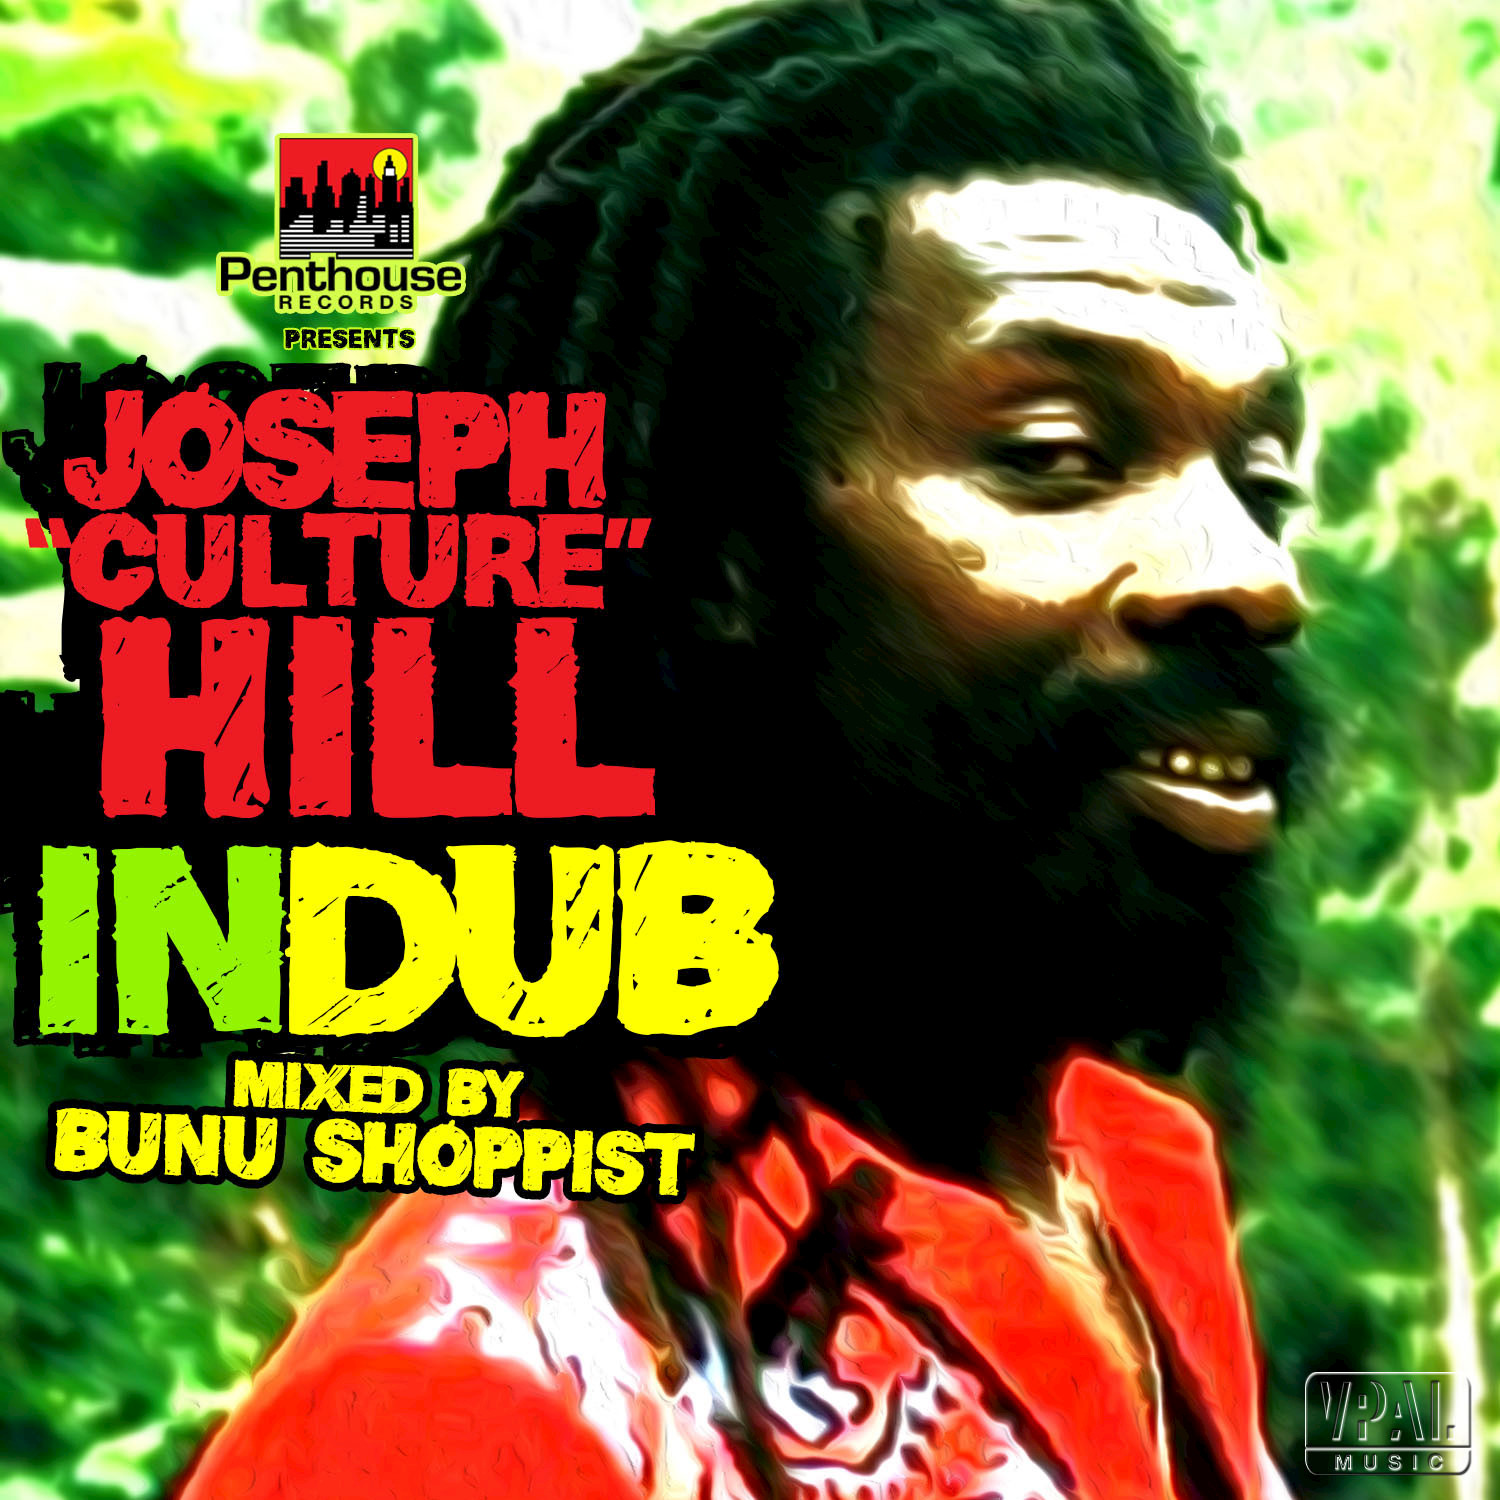 Joseph " Culture" Hill: In Dub Bunu Shoppist Mix